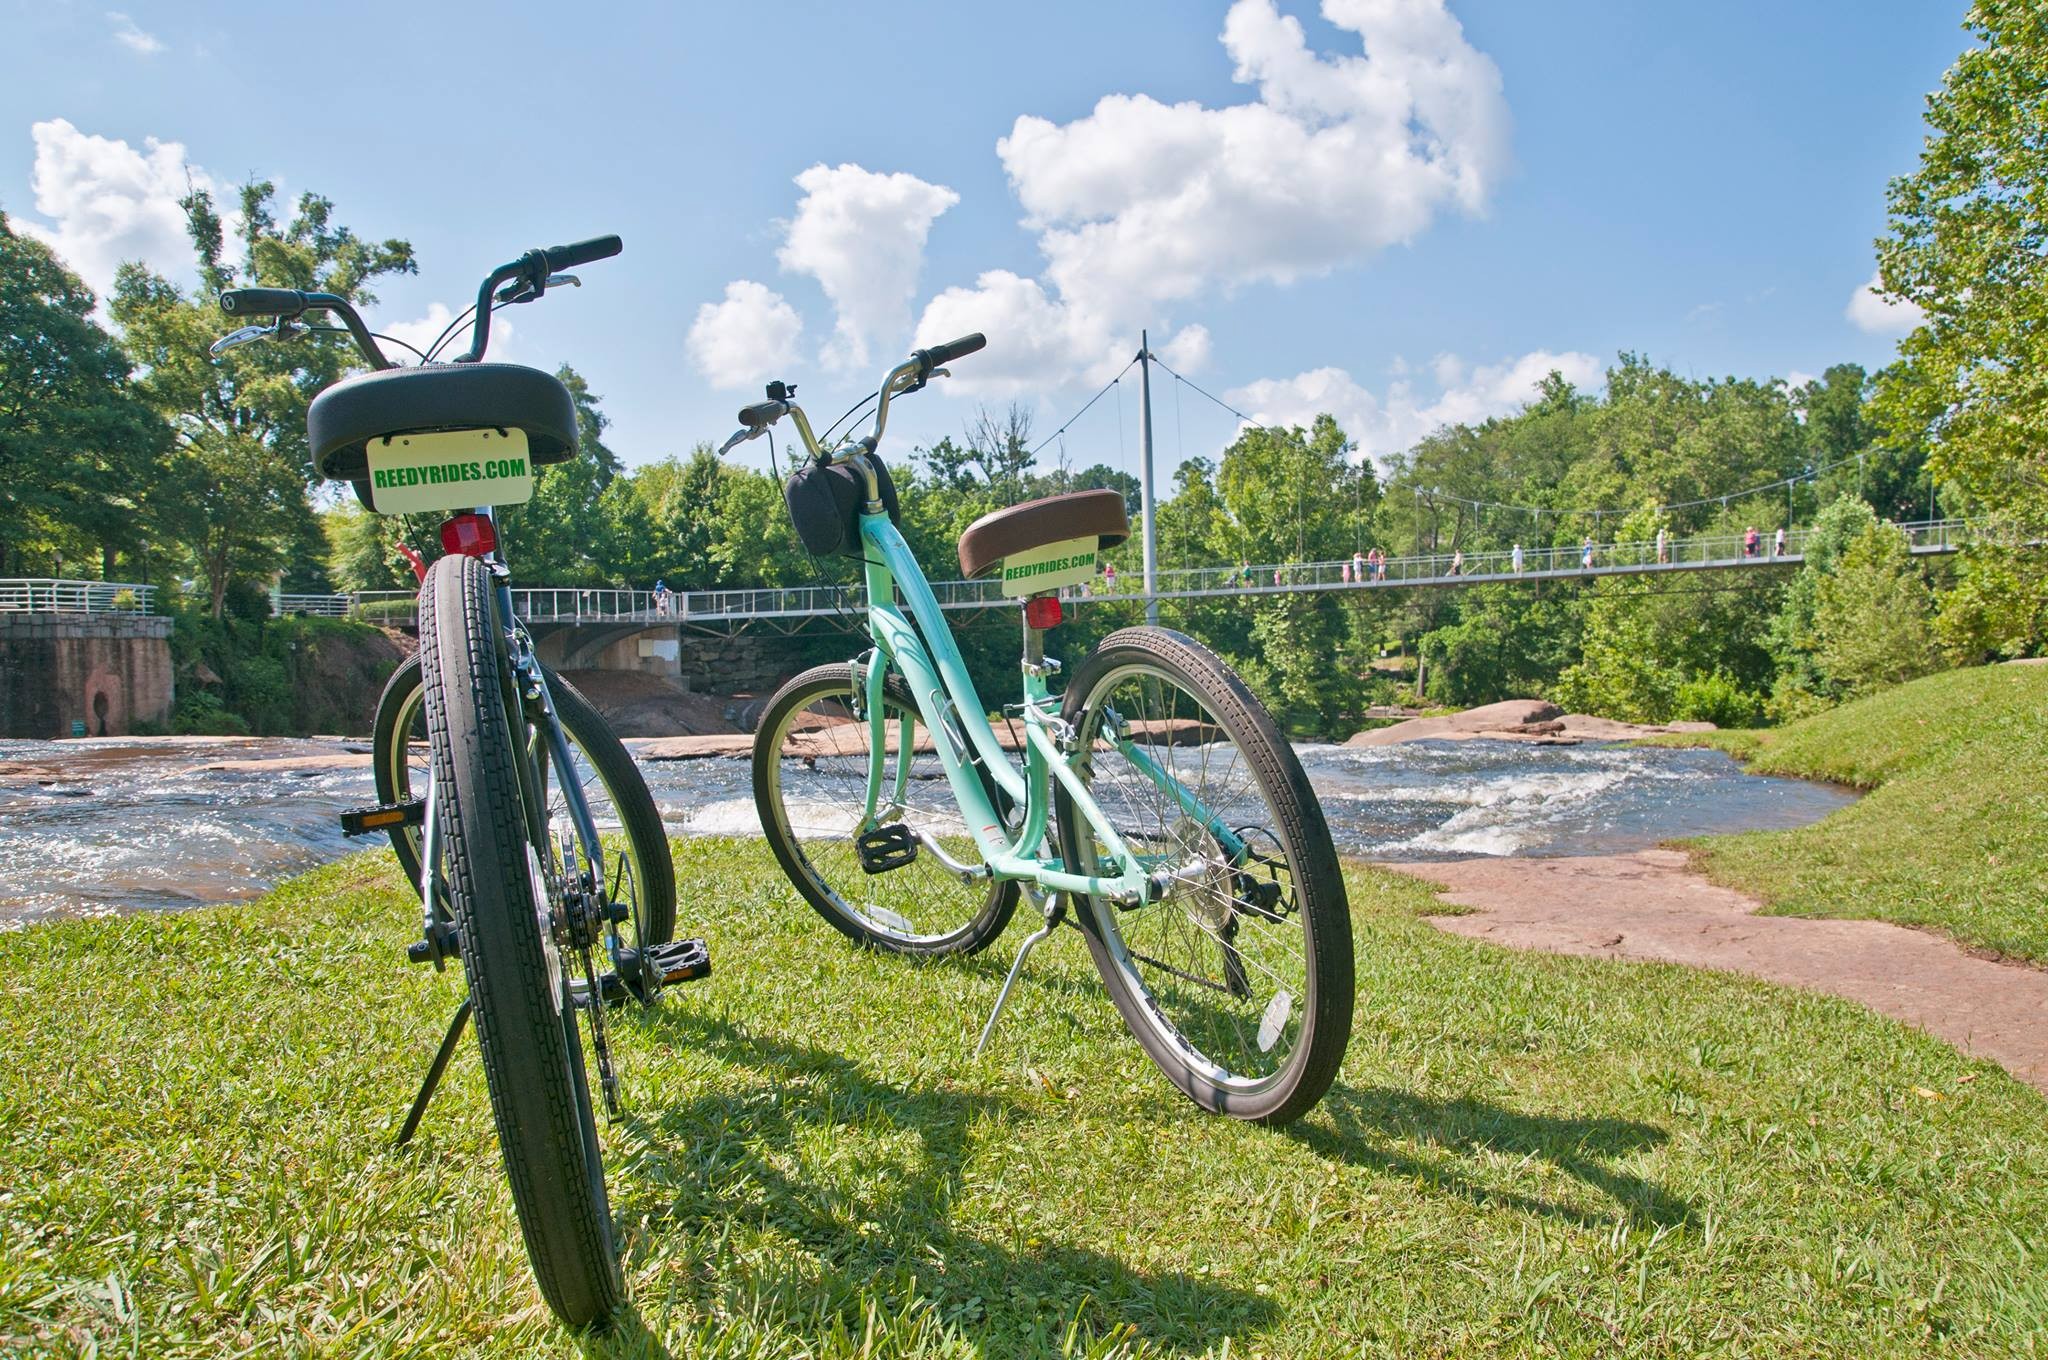 reedy-rides-bike-rentals-in-greenville